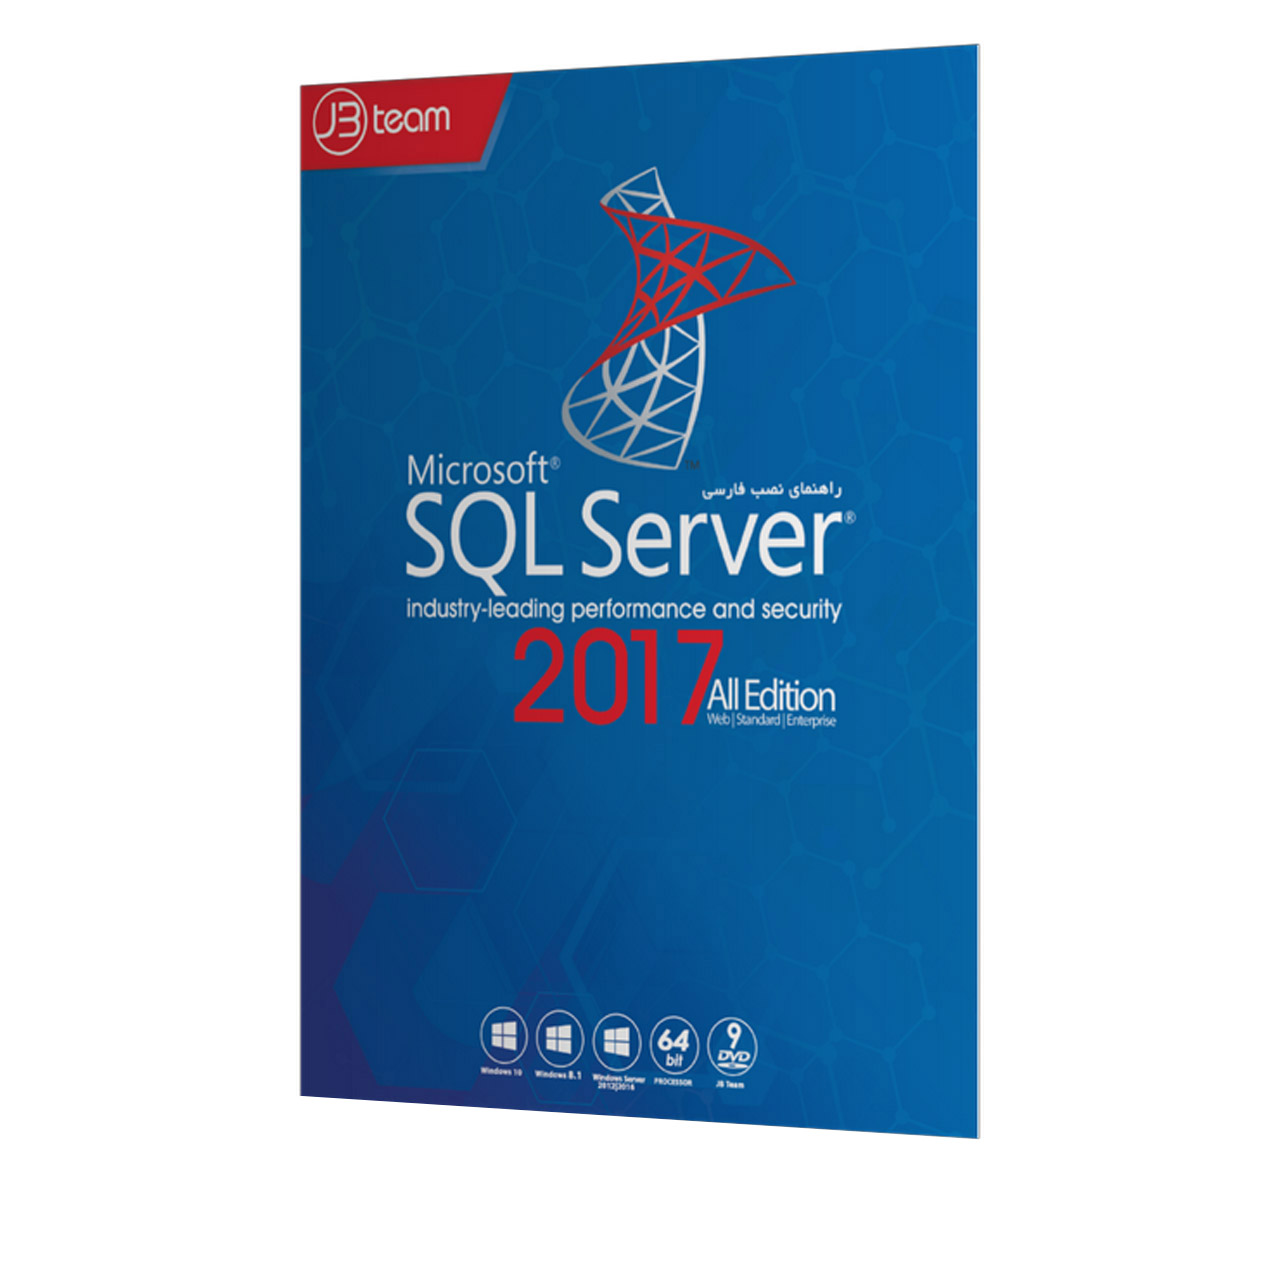 نرم افزار Microsoft SQL Server 2017 All Edition نشر جی بی تیم